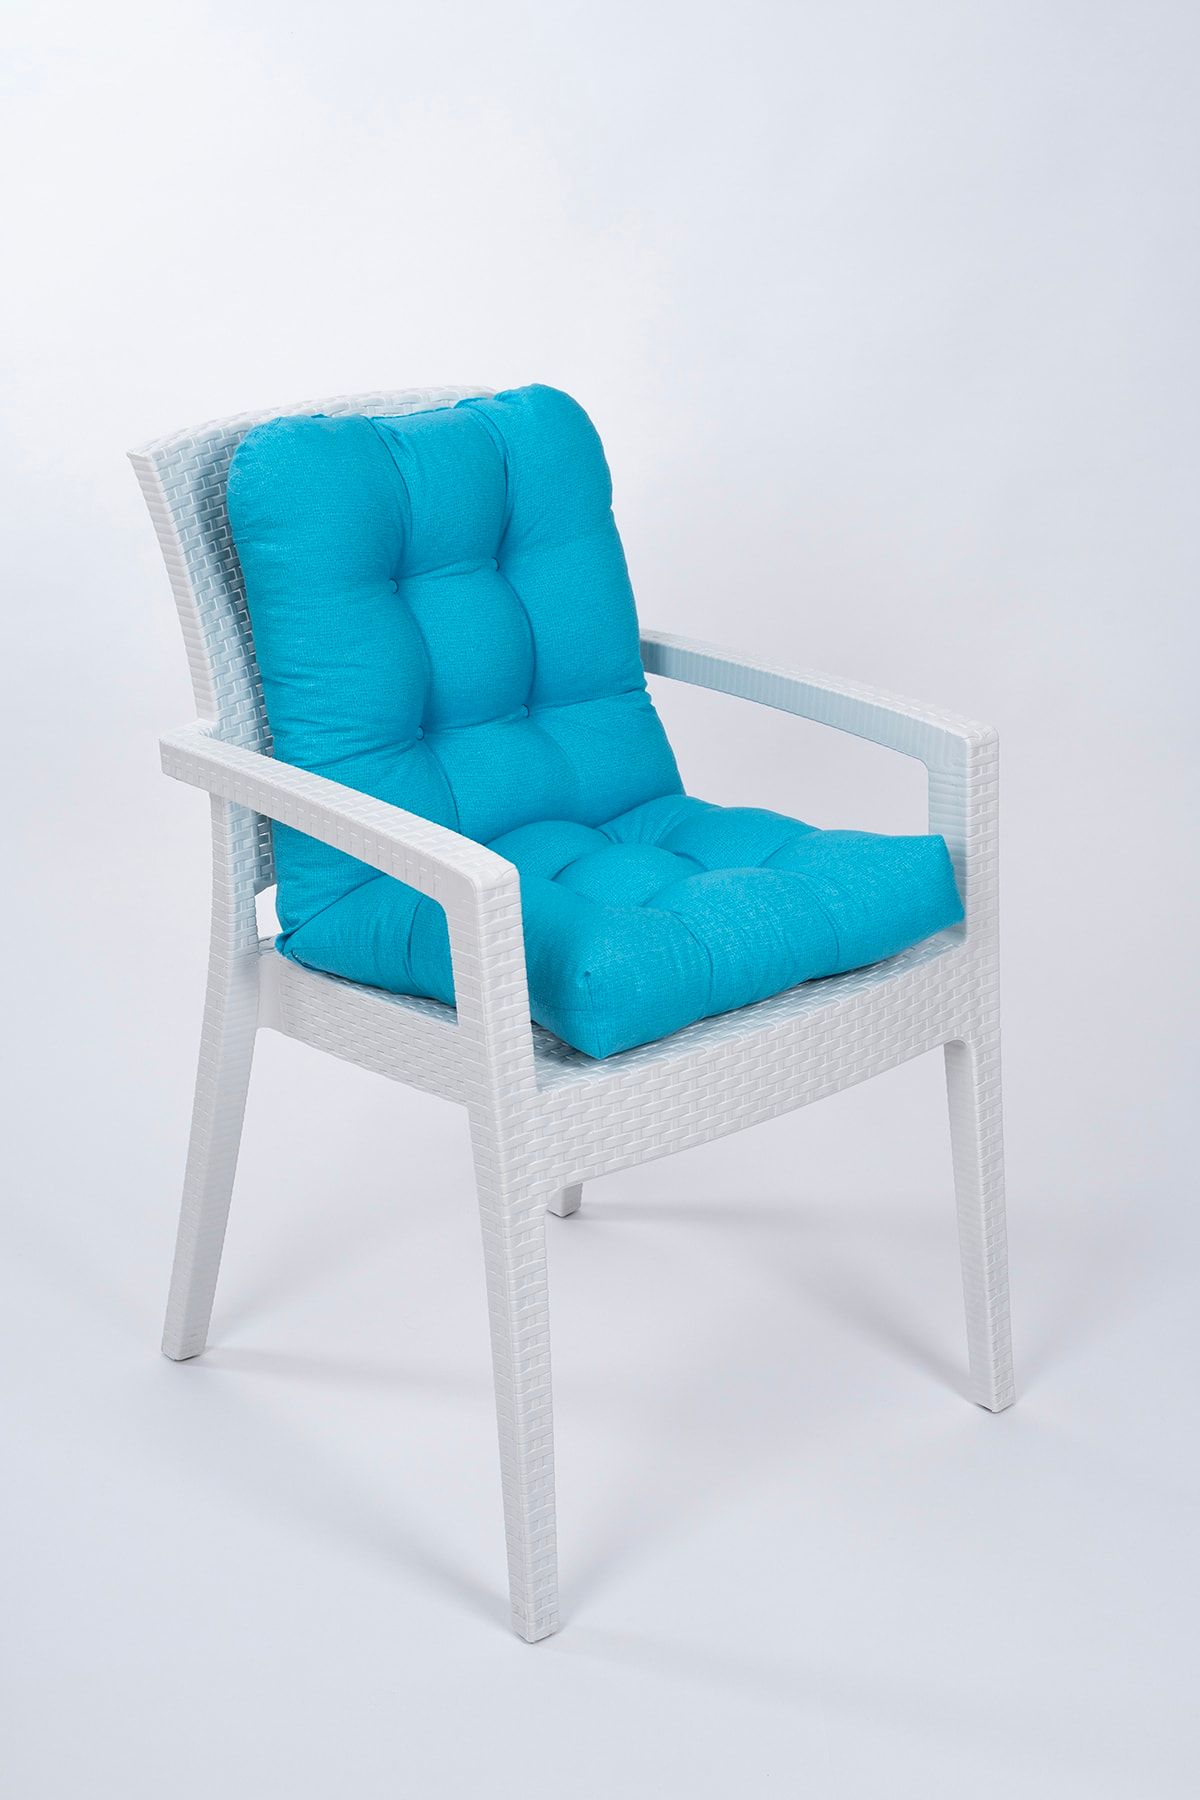 ALTINPAMUK Candy Pofidik Arkalıklı Turkuaz Sandalye Minderi Özel Dikişli Bağcıklı 44x94 Cm